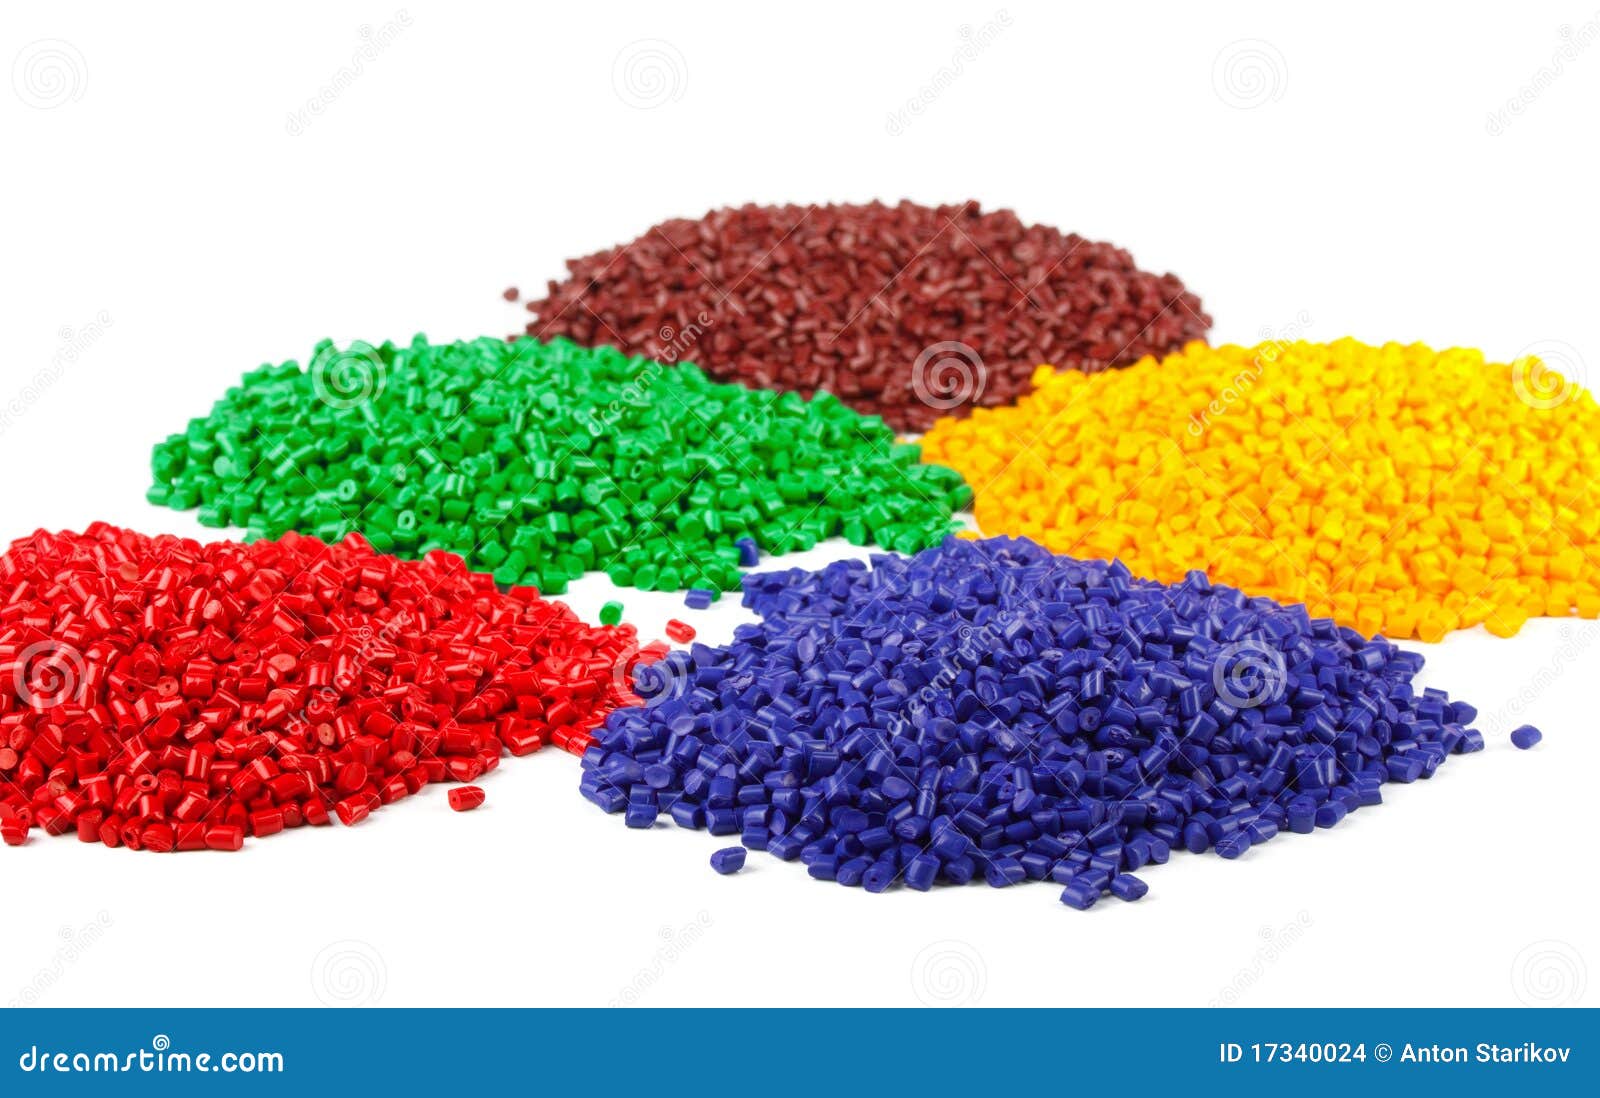 colourful plastic granules